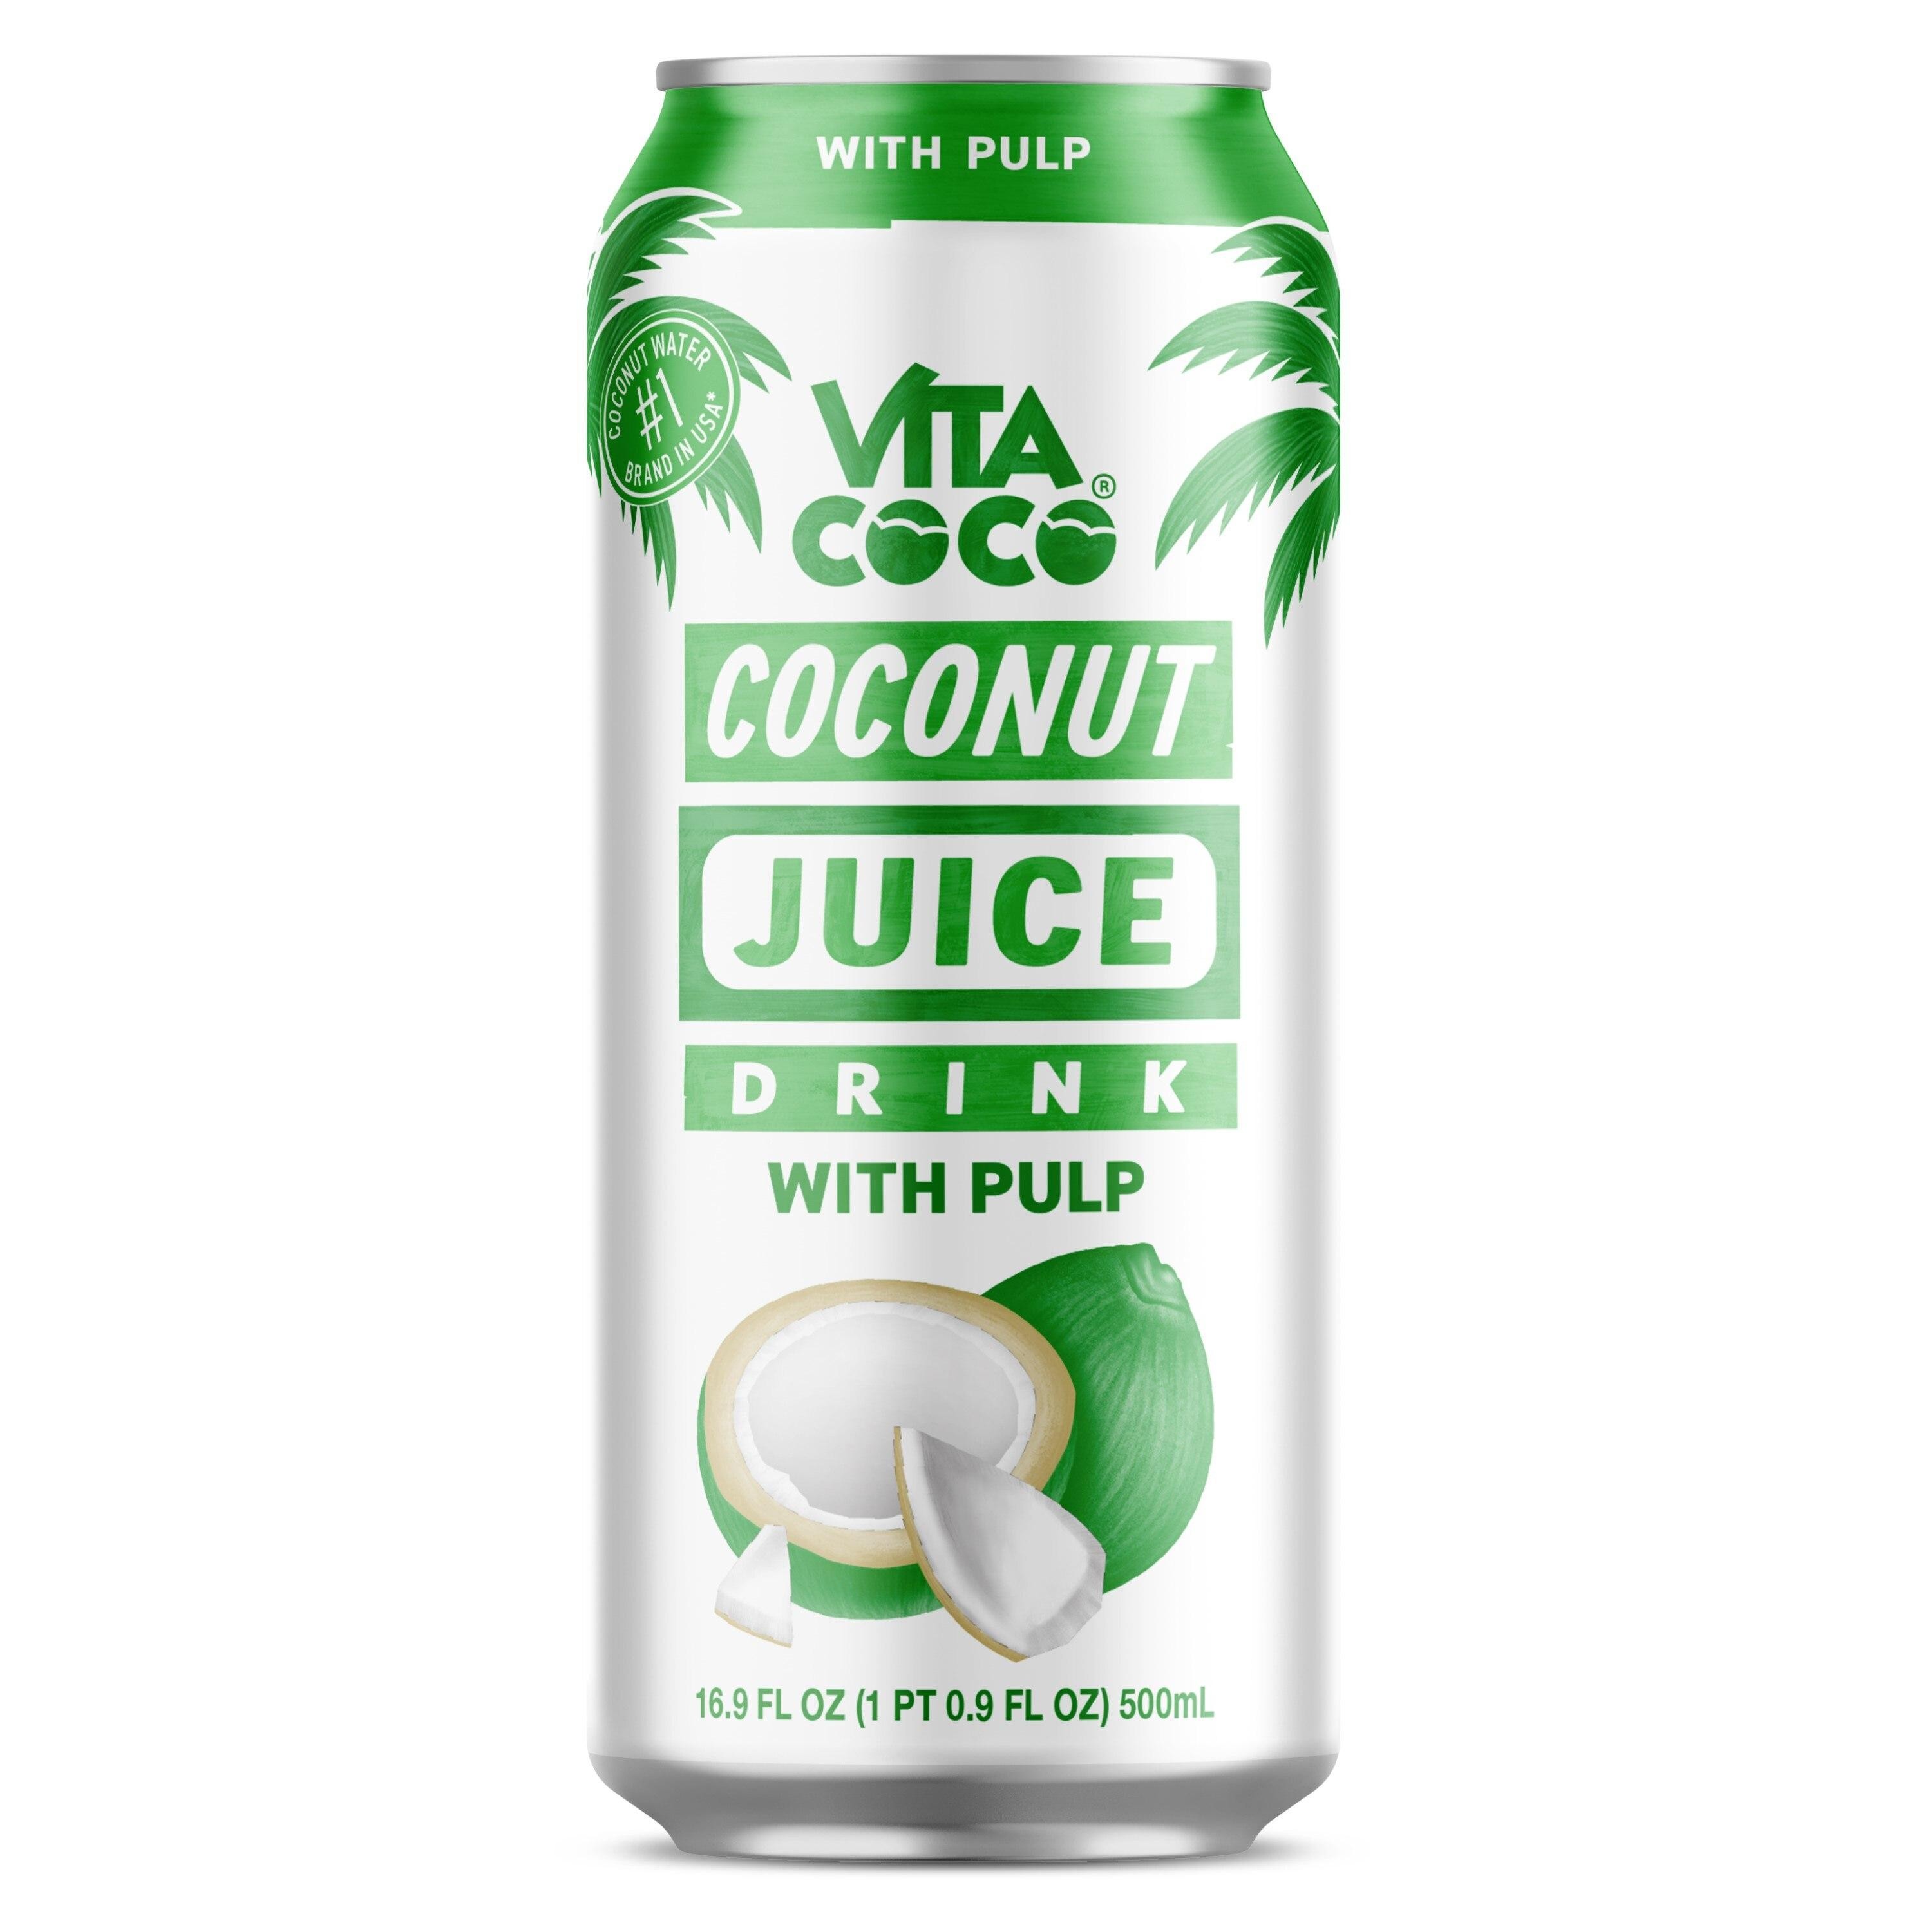 Vita Coco Coconut Juice Drink with Pulp 16.9oz